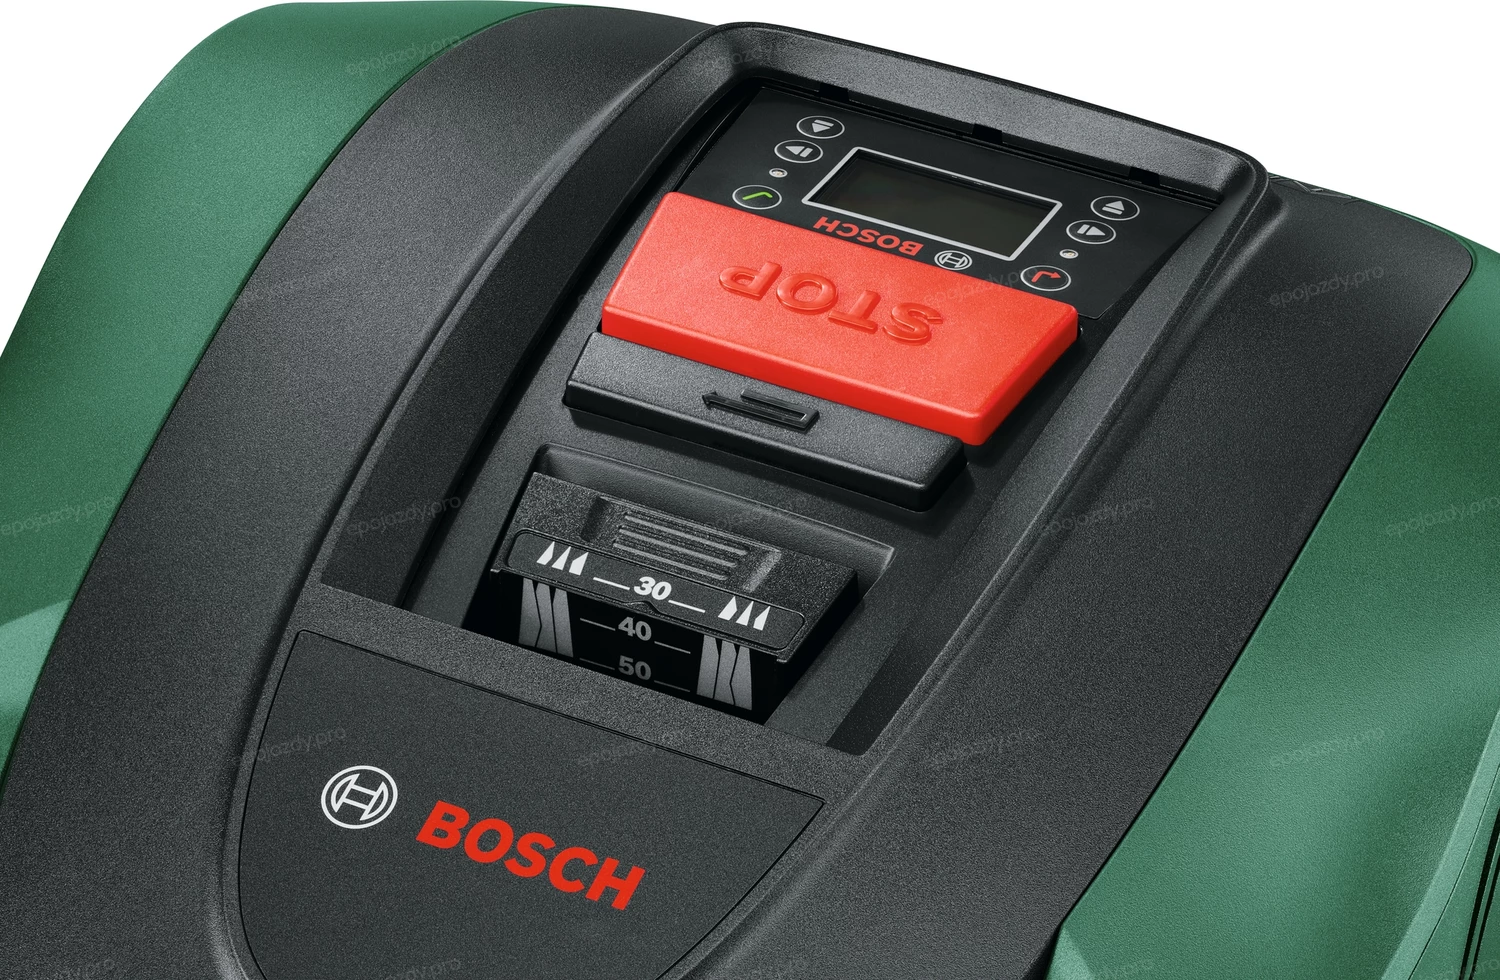 Robot koszący Bosch Indego S+ 500 jest bardzo prosty w obsłudze